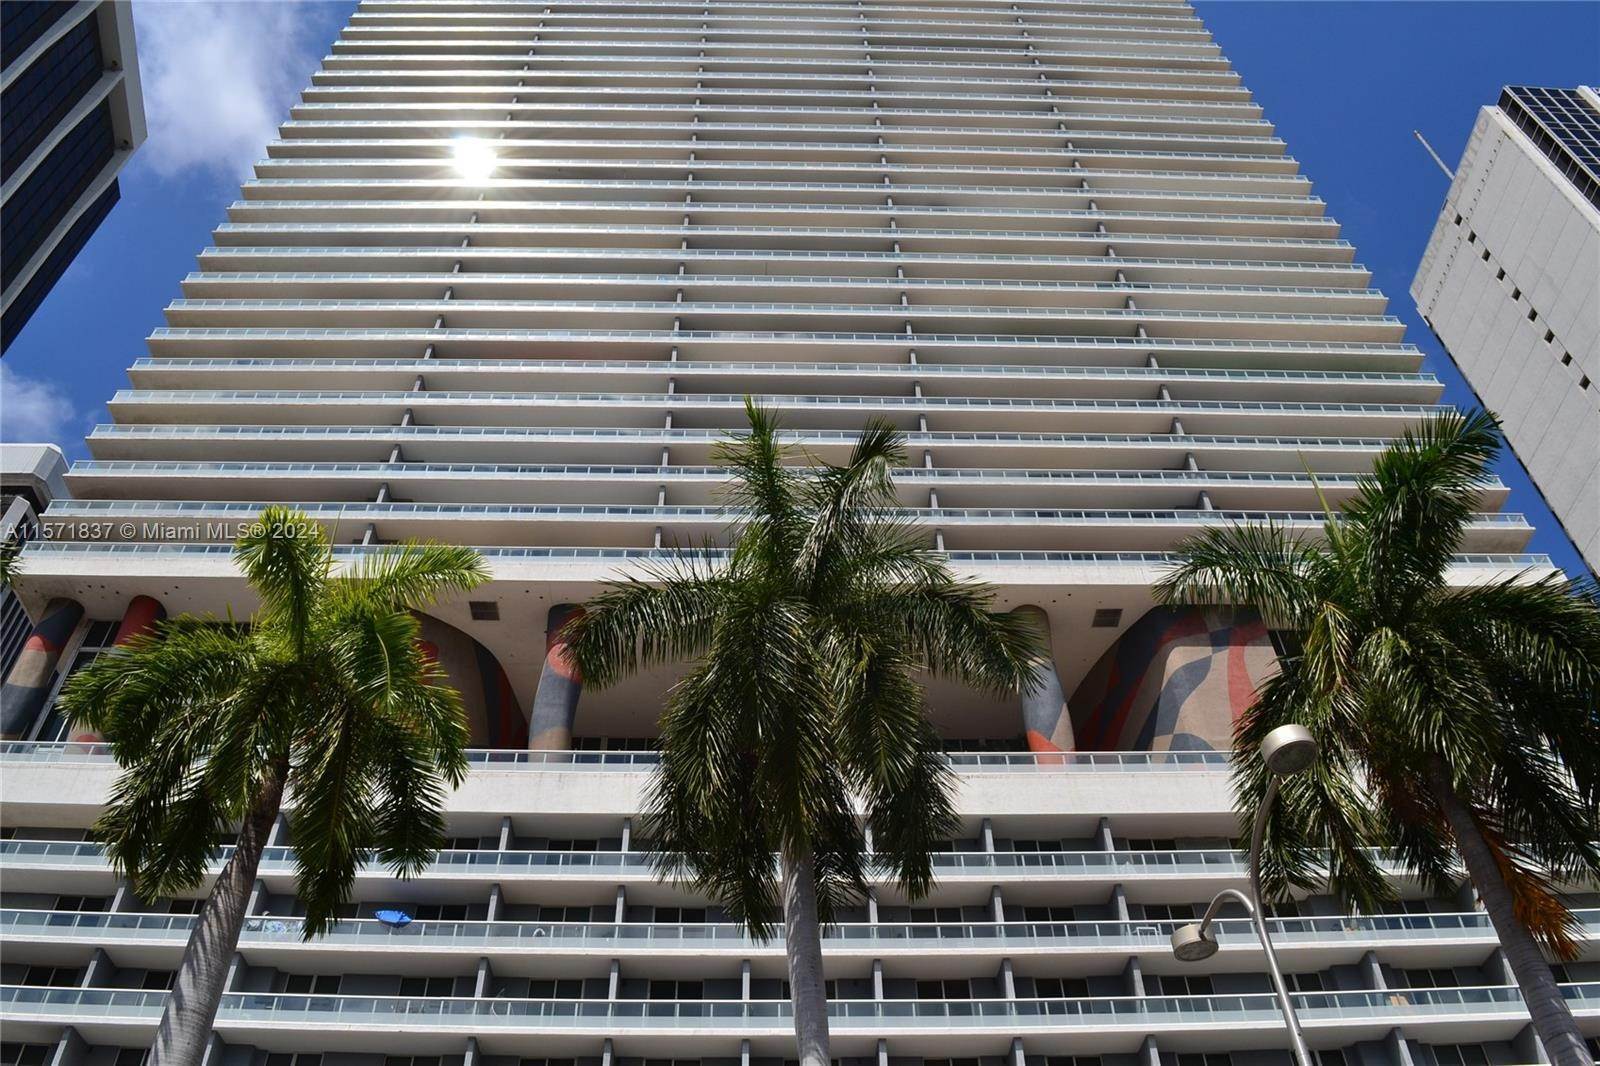 Condominium at Downtown Miami, Miami, FL 33132